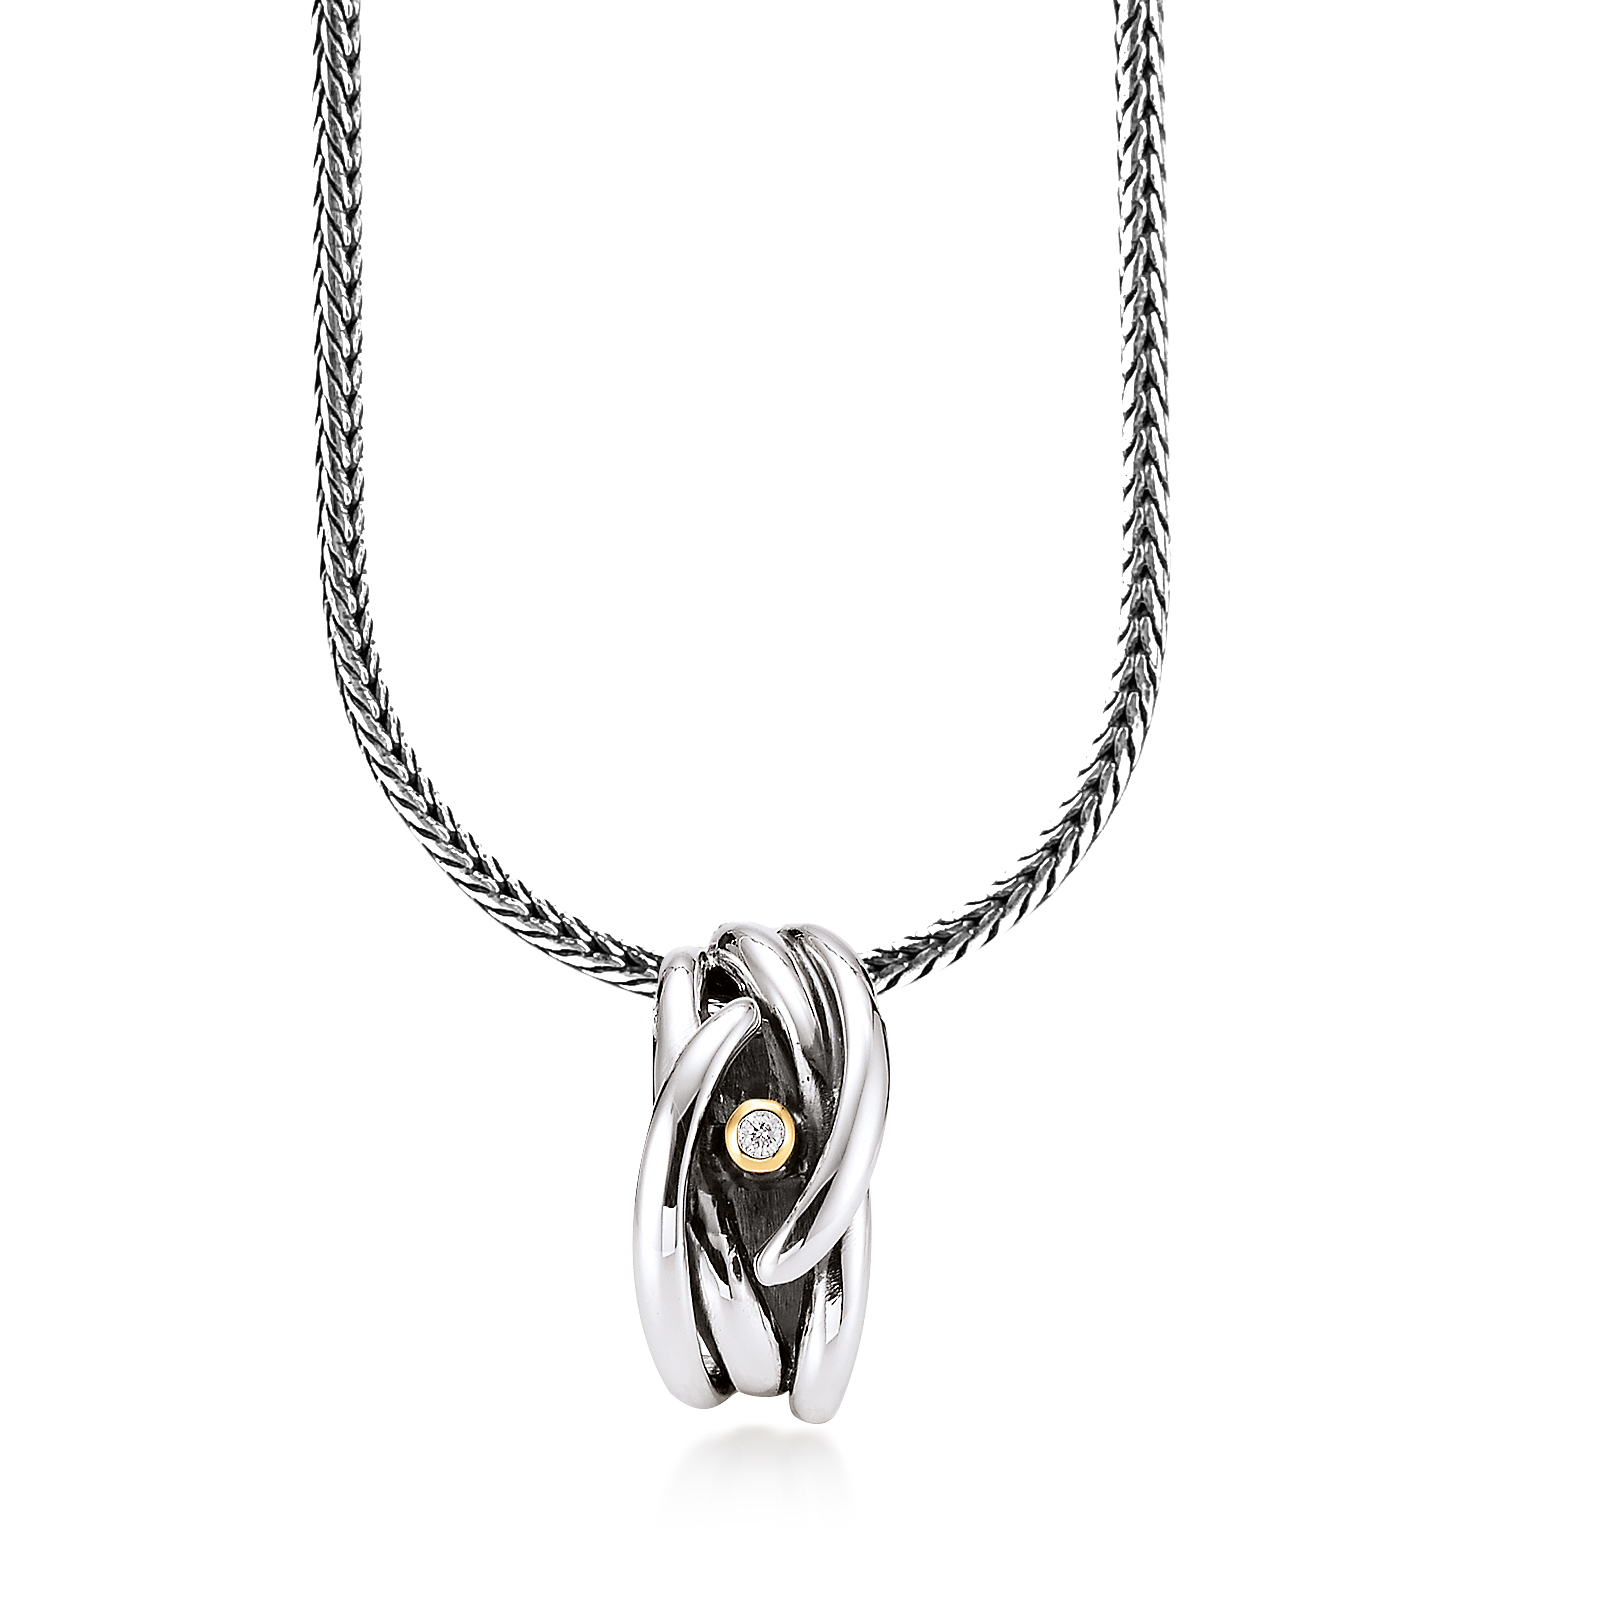 Billede af Aagaard sølv collier kæde med vedhæng - 11333863-45